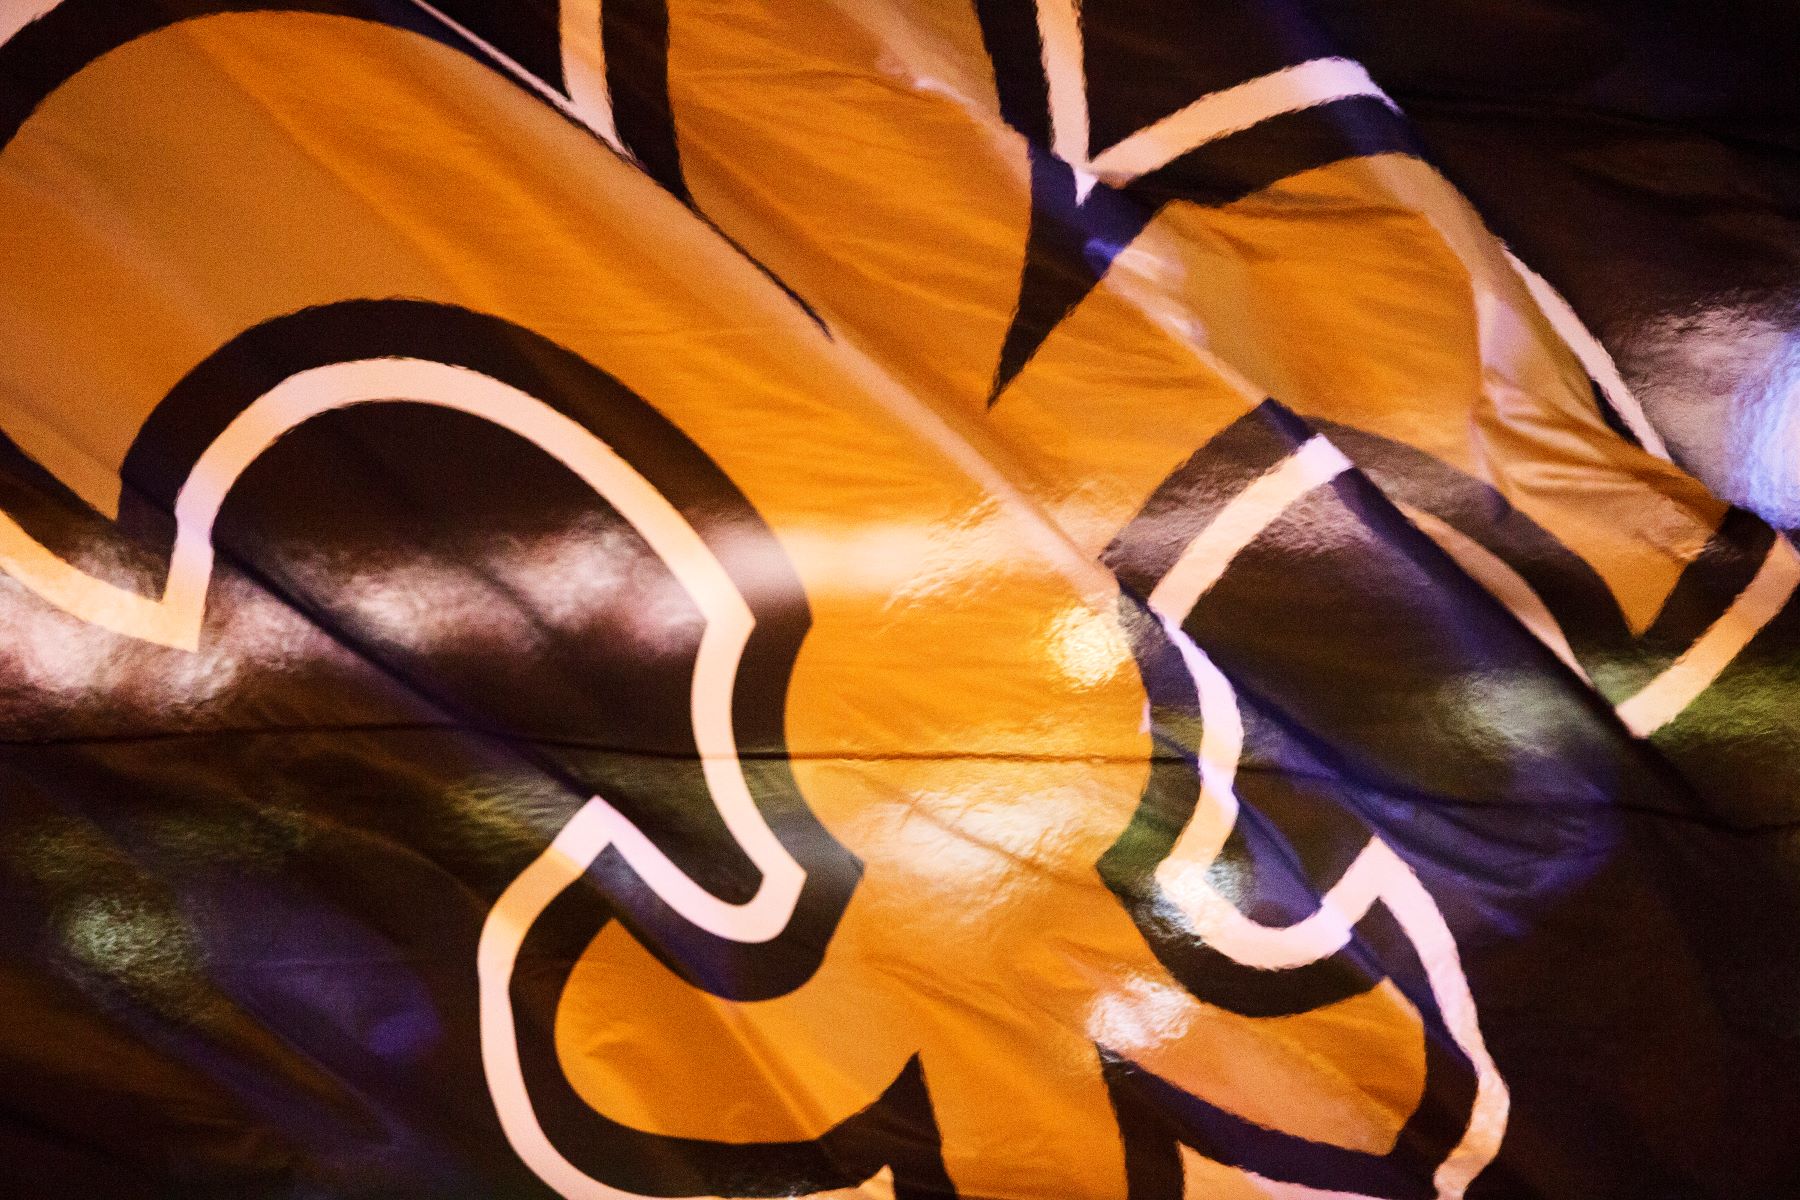 New Orleans Saints NFL team logo on flag on a fluttering flag